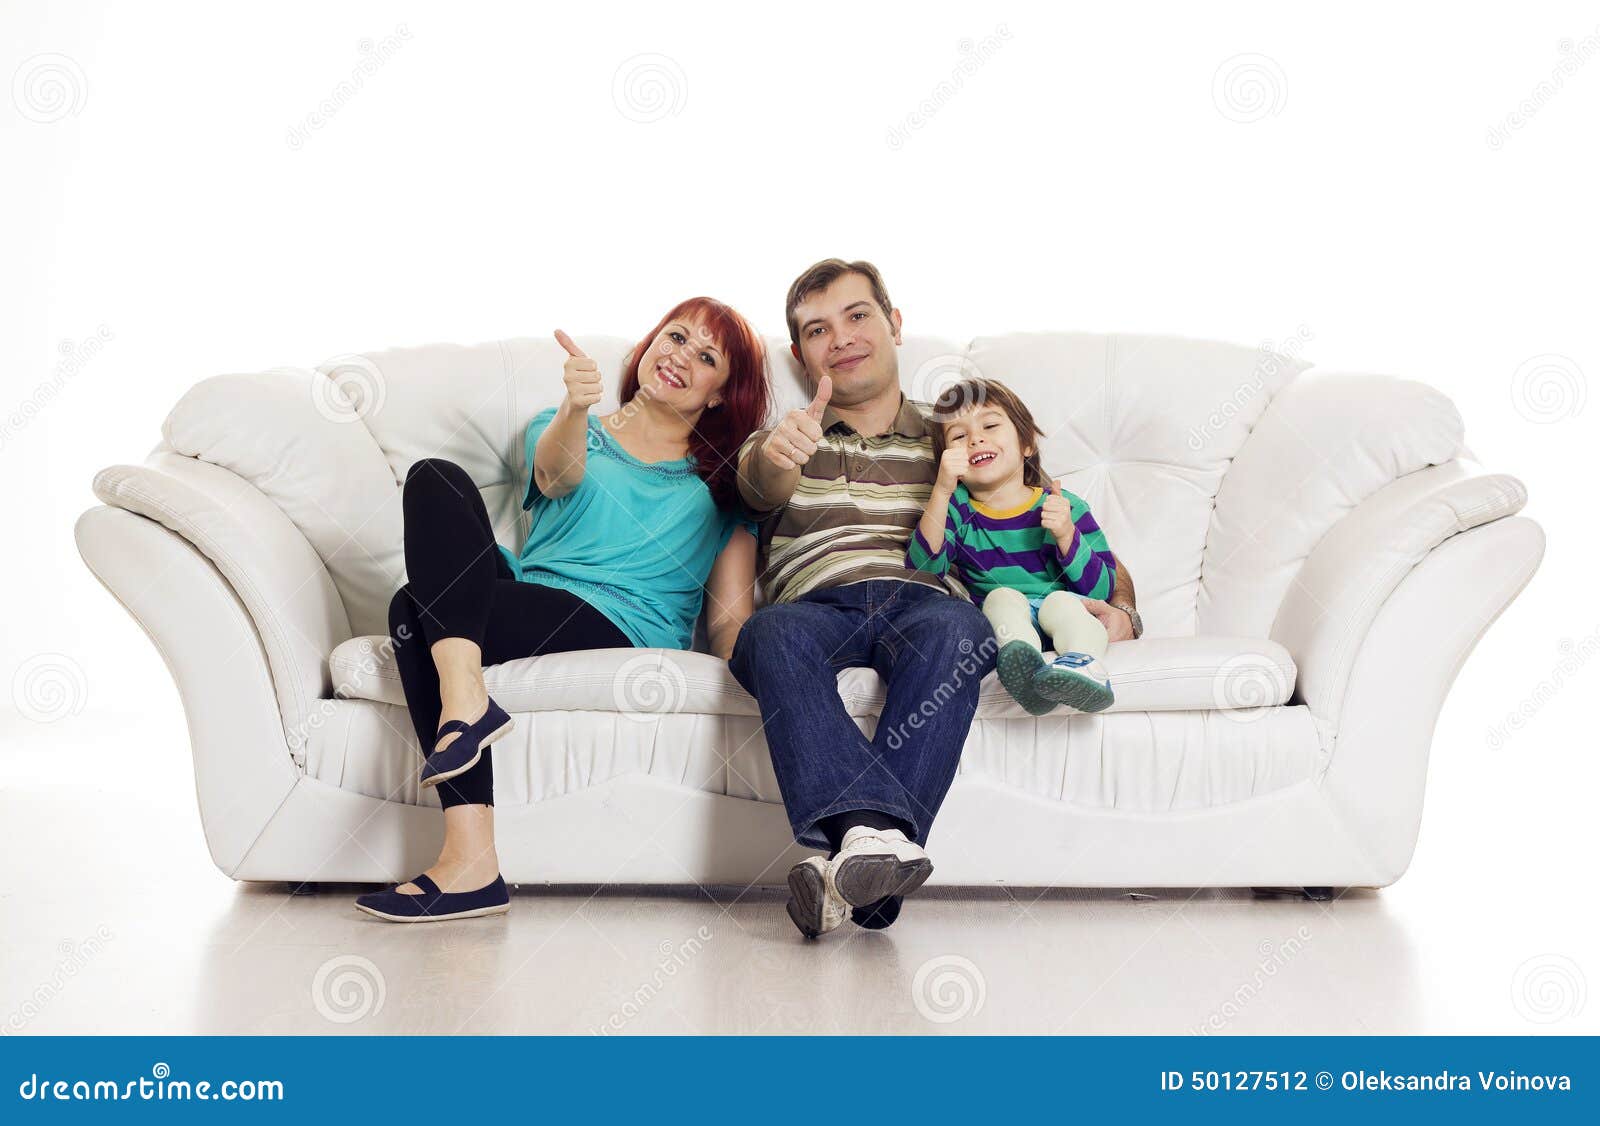 Папа сидит на диване